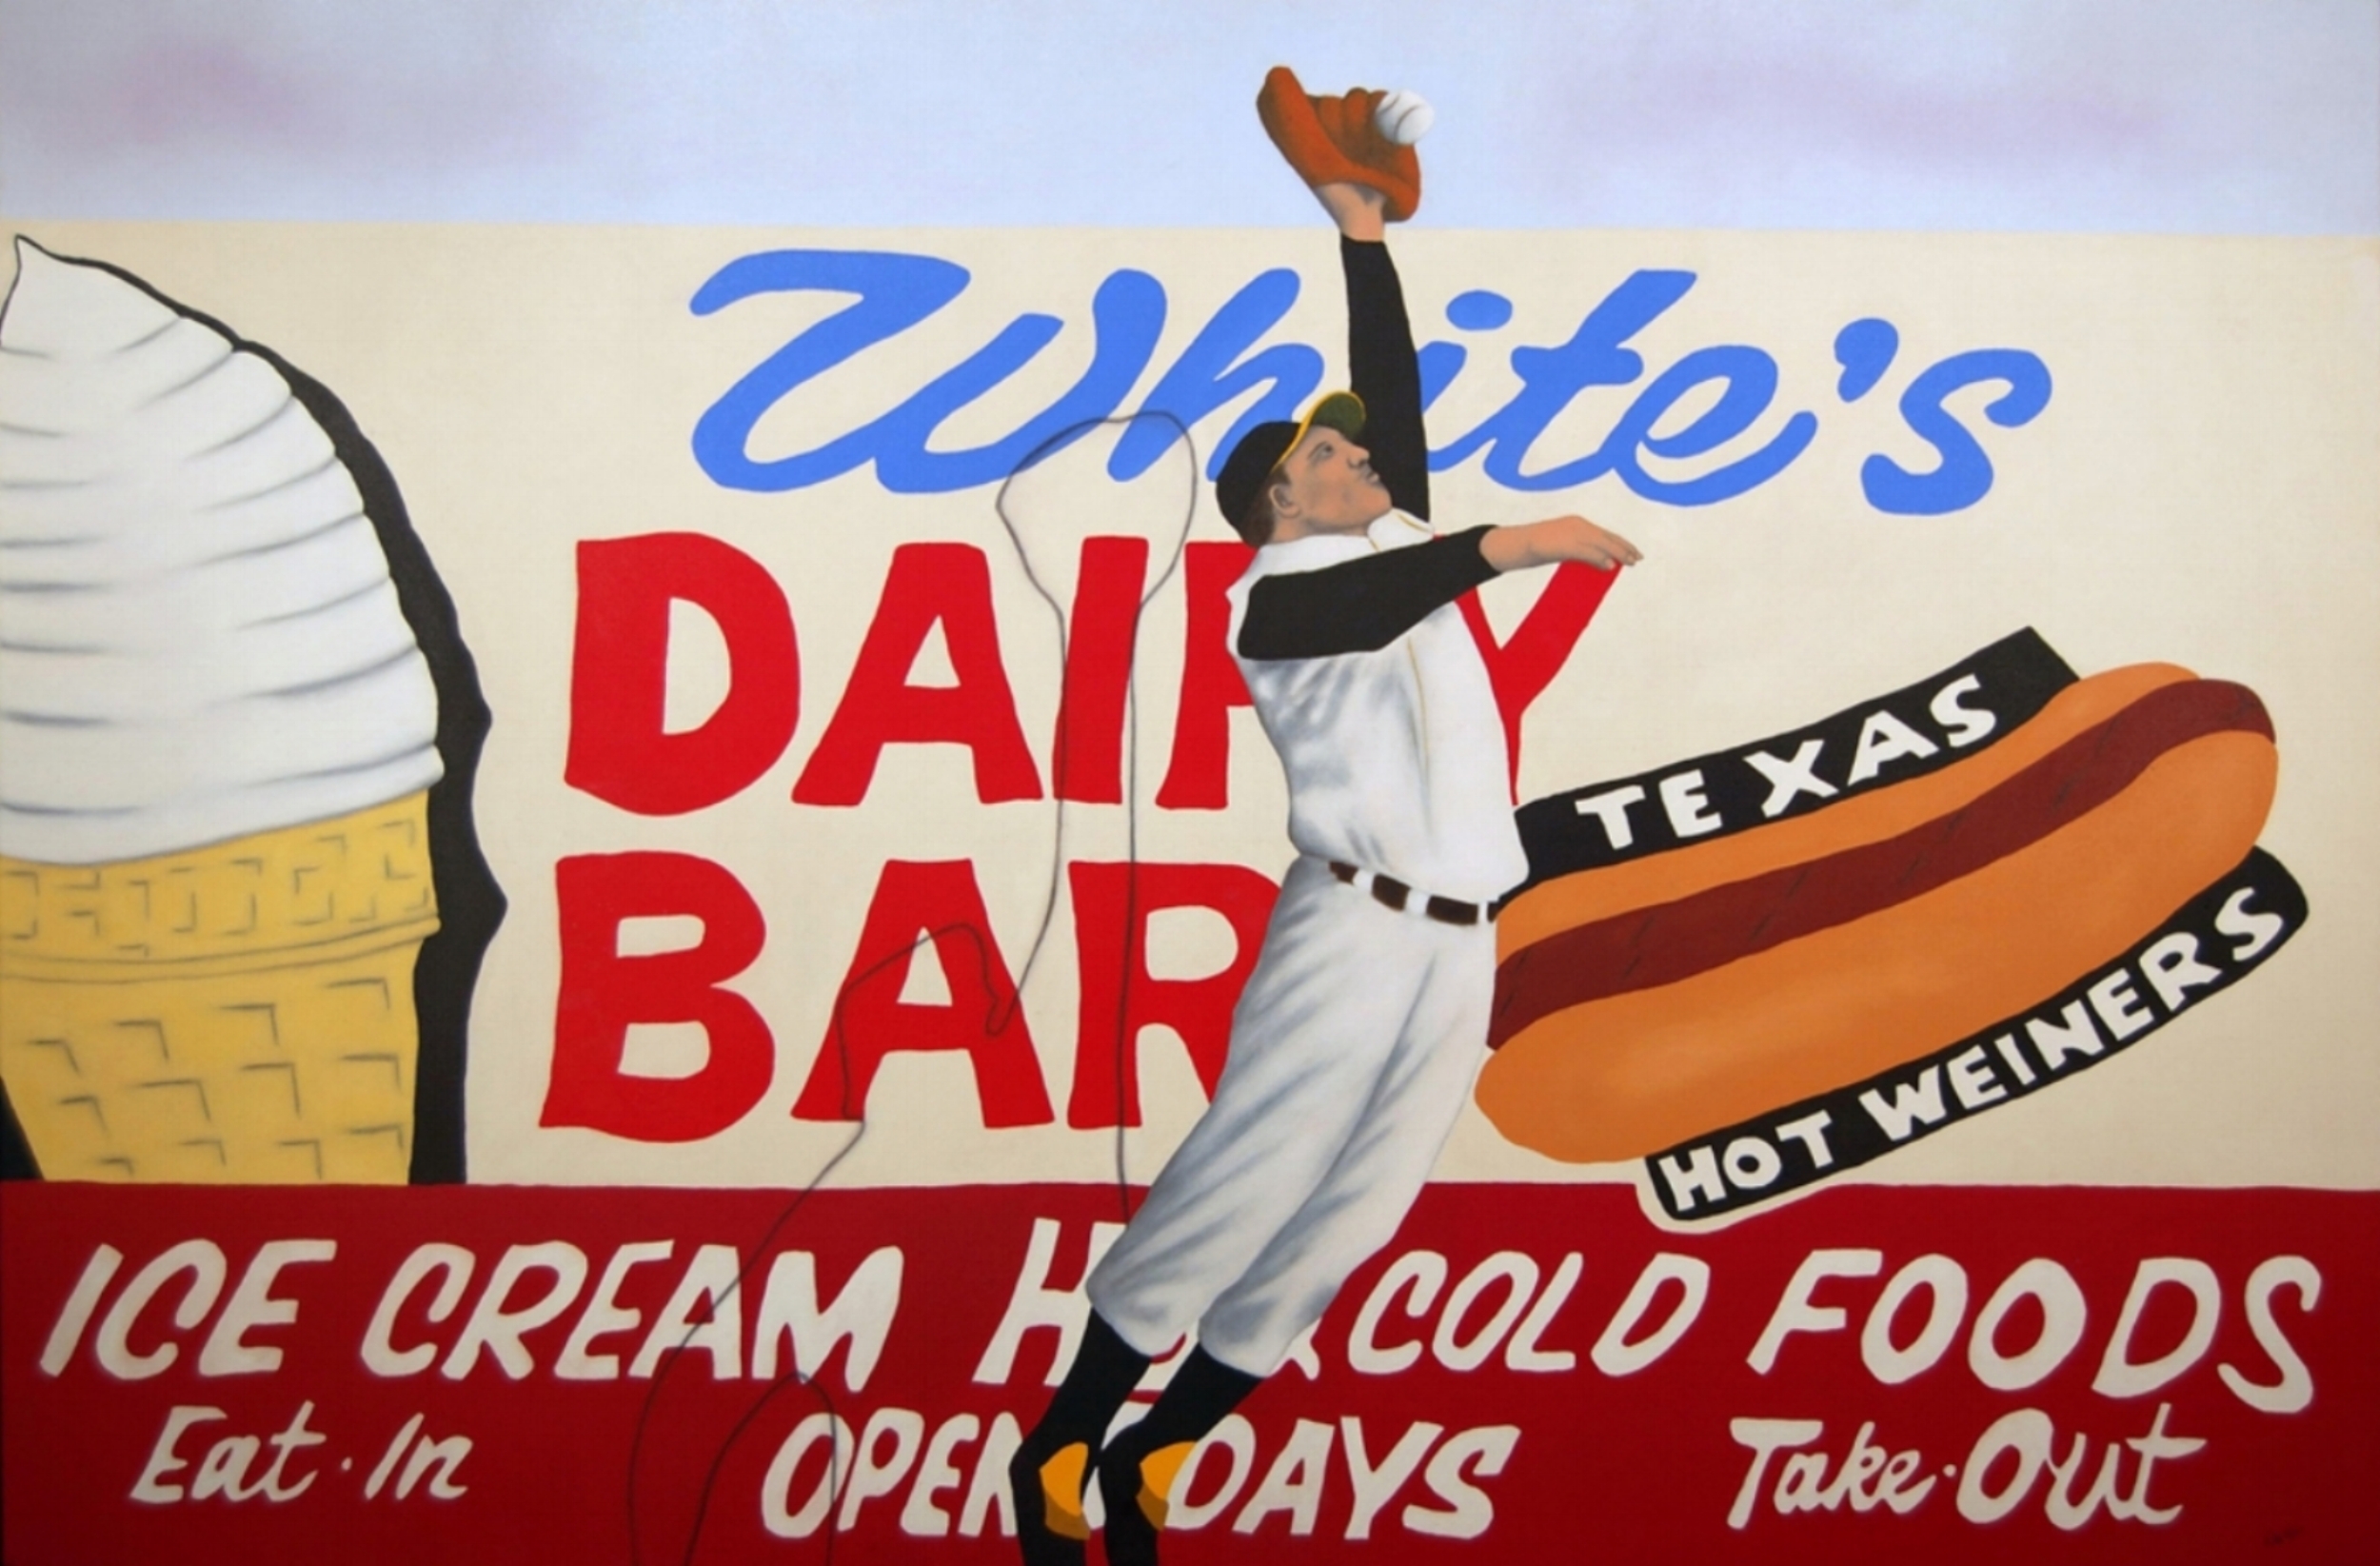 White's Dairy Bar